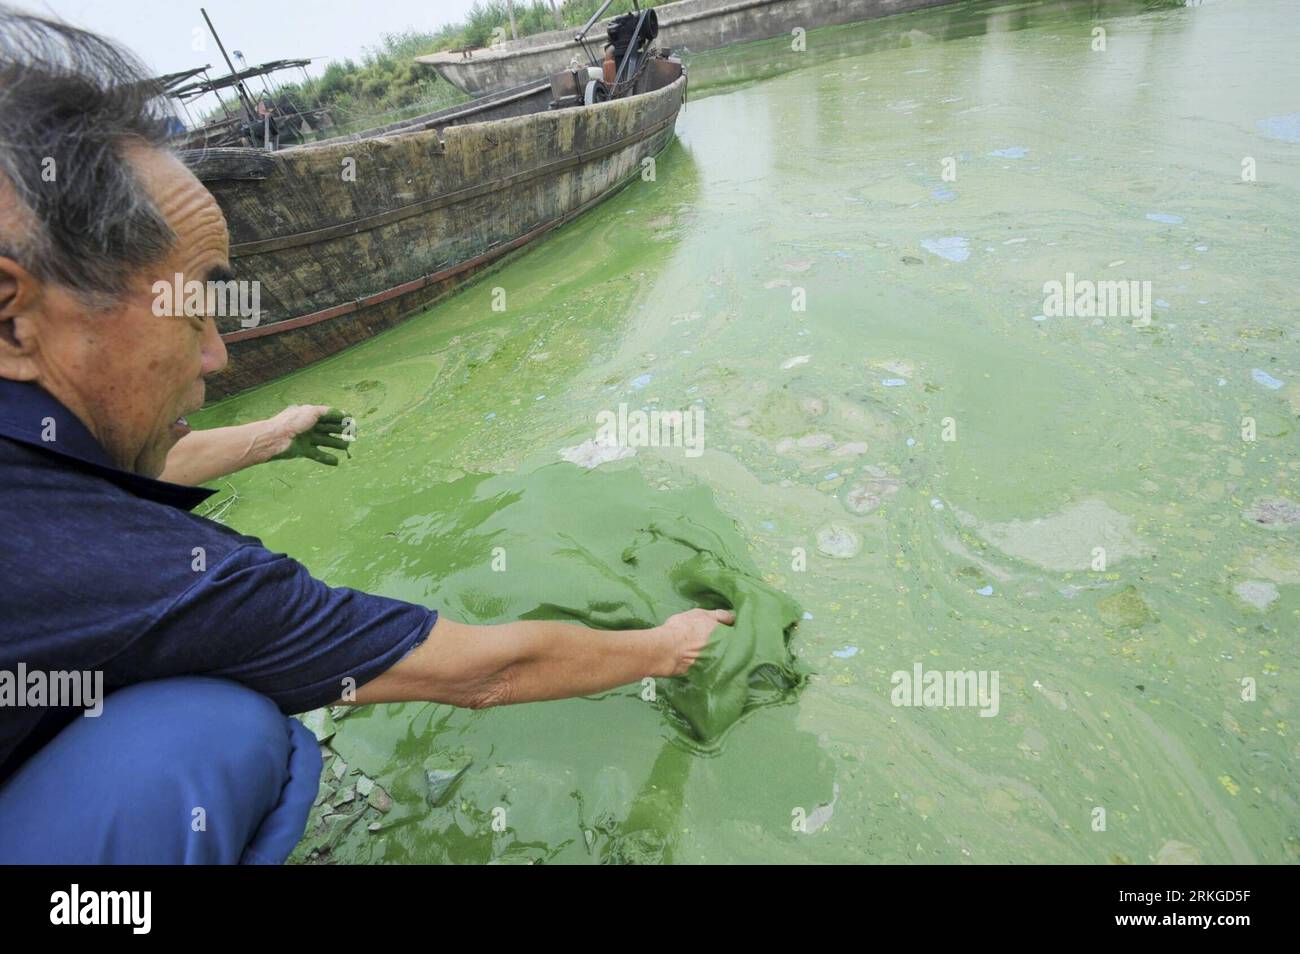 Bildnummer: 55582653 Datum: 10.07.2011 Copyright: imago/Xinhua (110710) -- HEFEI, 10 luglio 2011 (Xinhua) -- Un pescatore mescola acqua piena di alghe con la mano sulla riva del lago Chaohu nella provincia di Anhui della Cina orientale, 10 luglio 2011. Una fioritura di alghe ha ricoperto di recente il lago Chaohu. (Xinhua/Yang Xiaoyuan) (ljh) CHINA-ANHUI-HEFEI-CHAOHU LAKE-ALGAE (CN) PUBLICATIONxNOTxINxCHN Wirtschaft Fischerei Fischer SEE Algen Plage Algenplage xdf x0x 2011 quer premiumd Bildnummer 55582653 Date 10 07 2011 Copyright Imago XINHUA Hefei Hefei HIS A Fisherman WHIS July 2011 Wissalgae WHIS Fisherman Wissalgae Wissalgae Wissalgae WHIS A Foto Stock